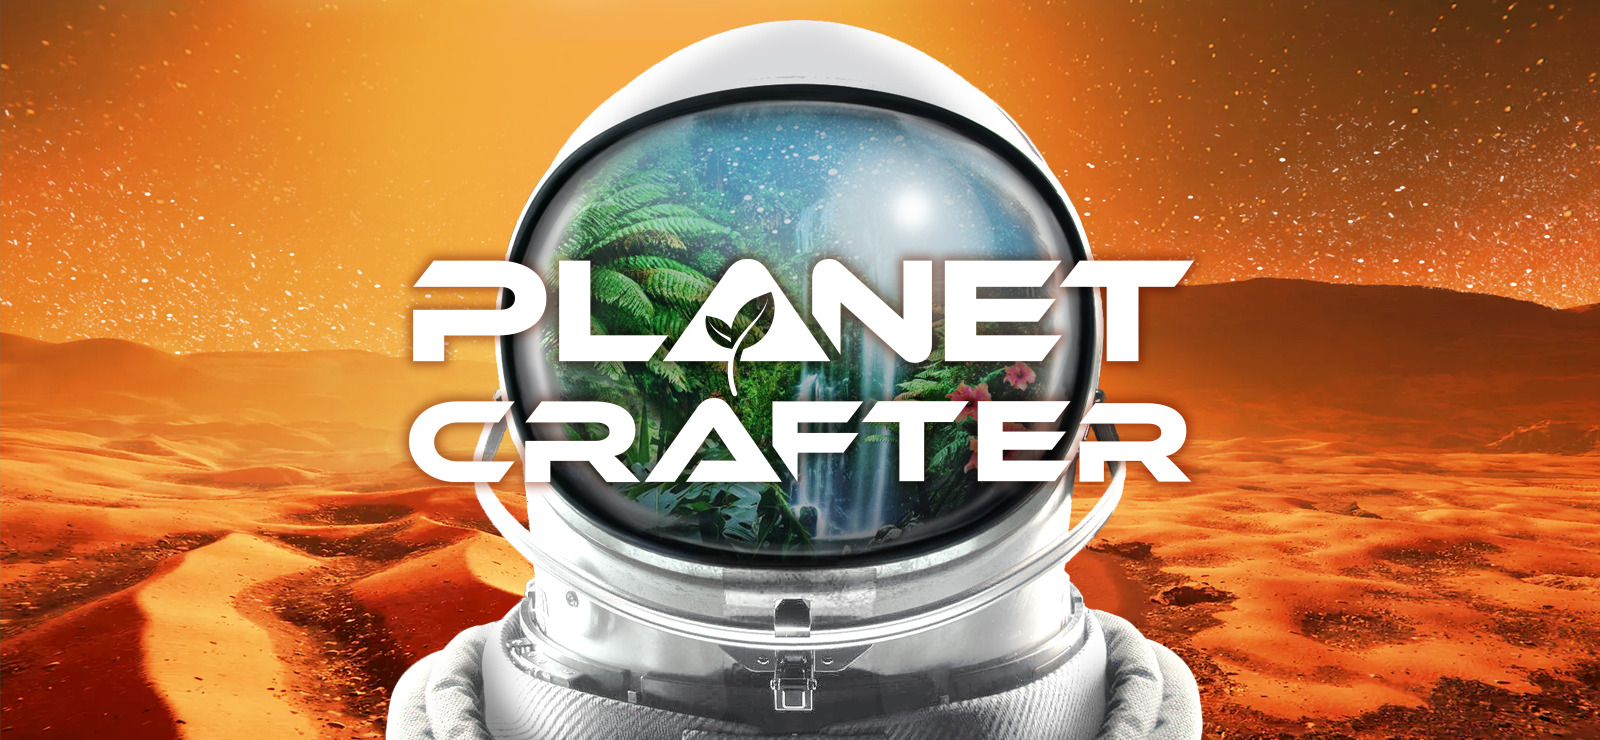 #4 The Planet Crafter | кооп | райское место - сломал запуск ракет